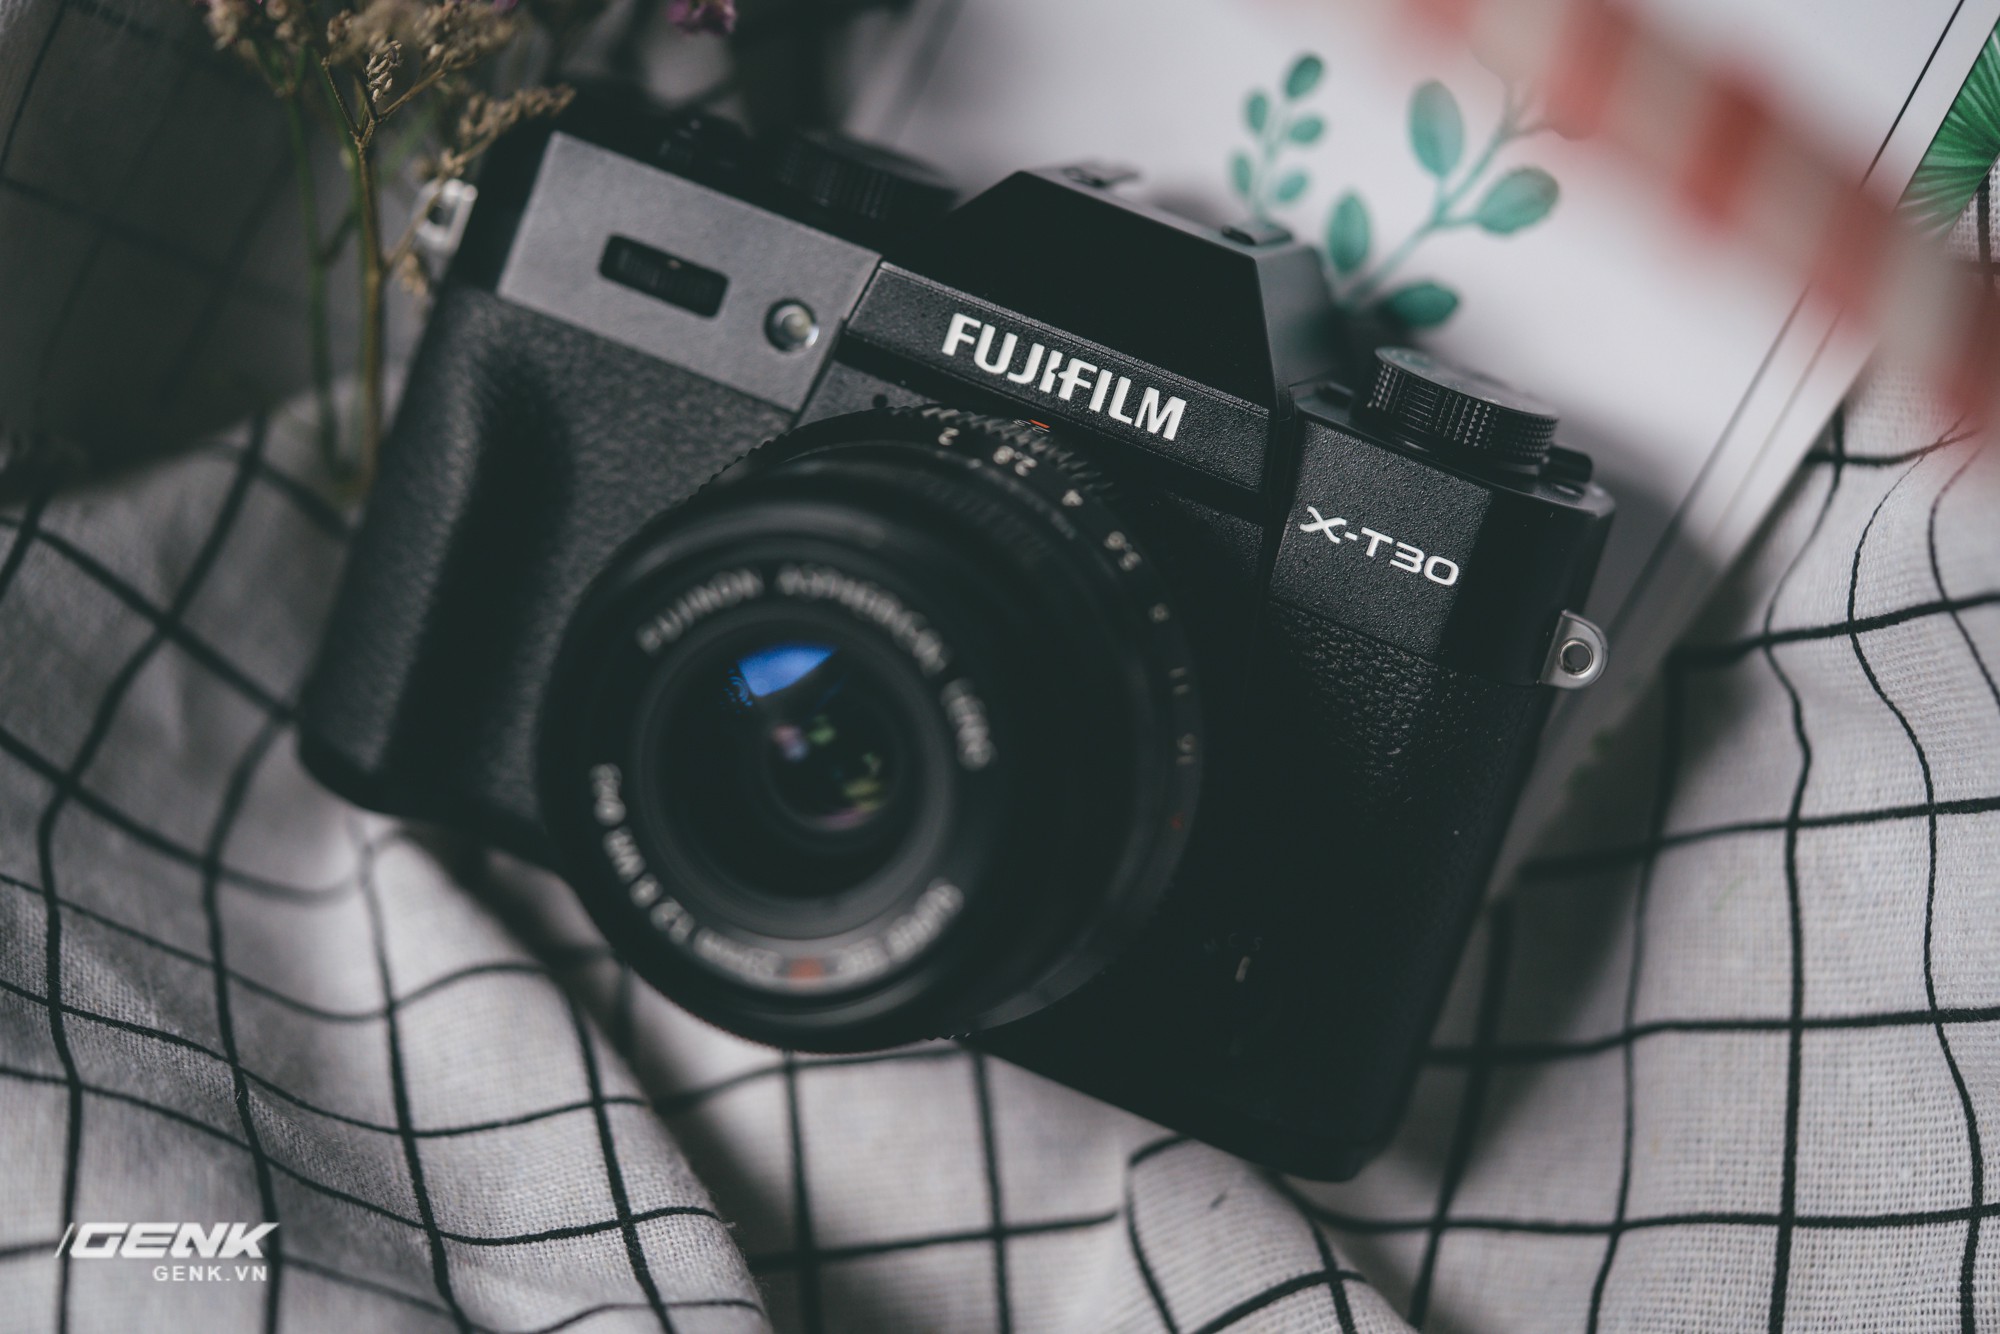 Đánh giá chi tiết máy ảnh không gương lật Fujifilm X-T30 - Đi tìm thứ ma thuật Fuji mà mọi người vẫn thường nói - Ảnh 34.